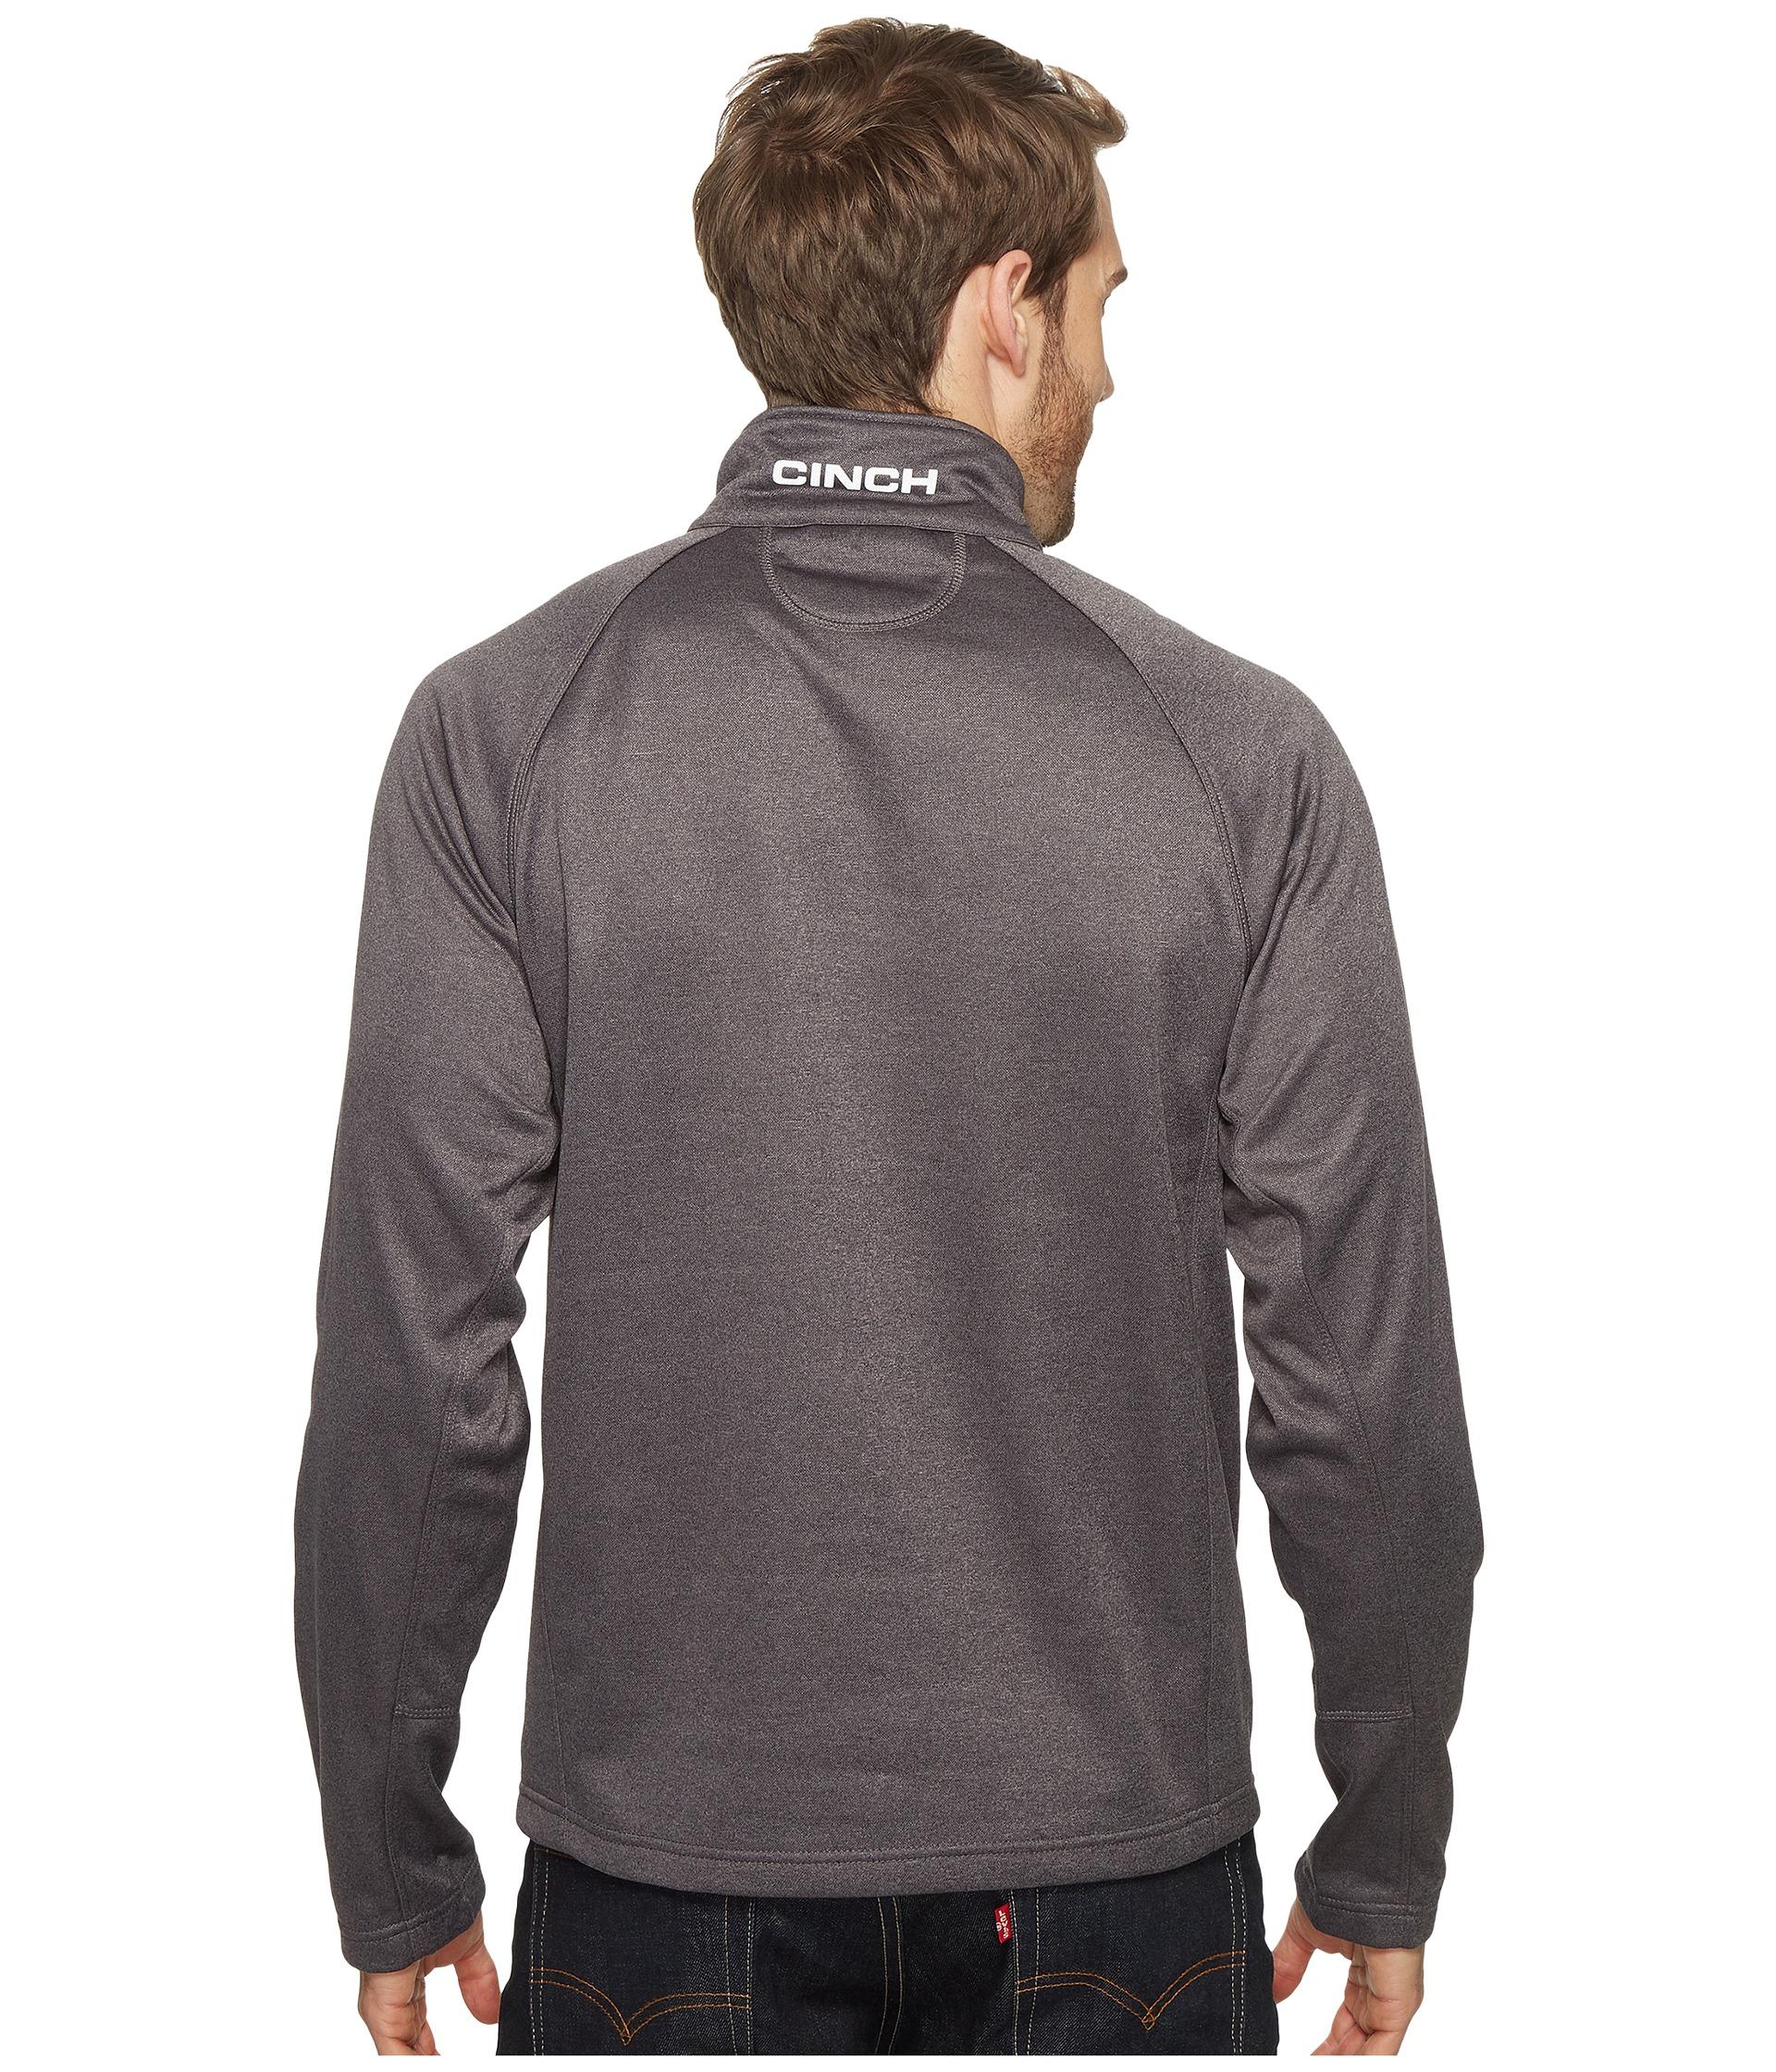 Download Lyst - Cinch Raglan Tech 1/4 Zip Pullover in Gray for Men